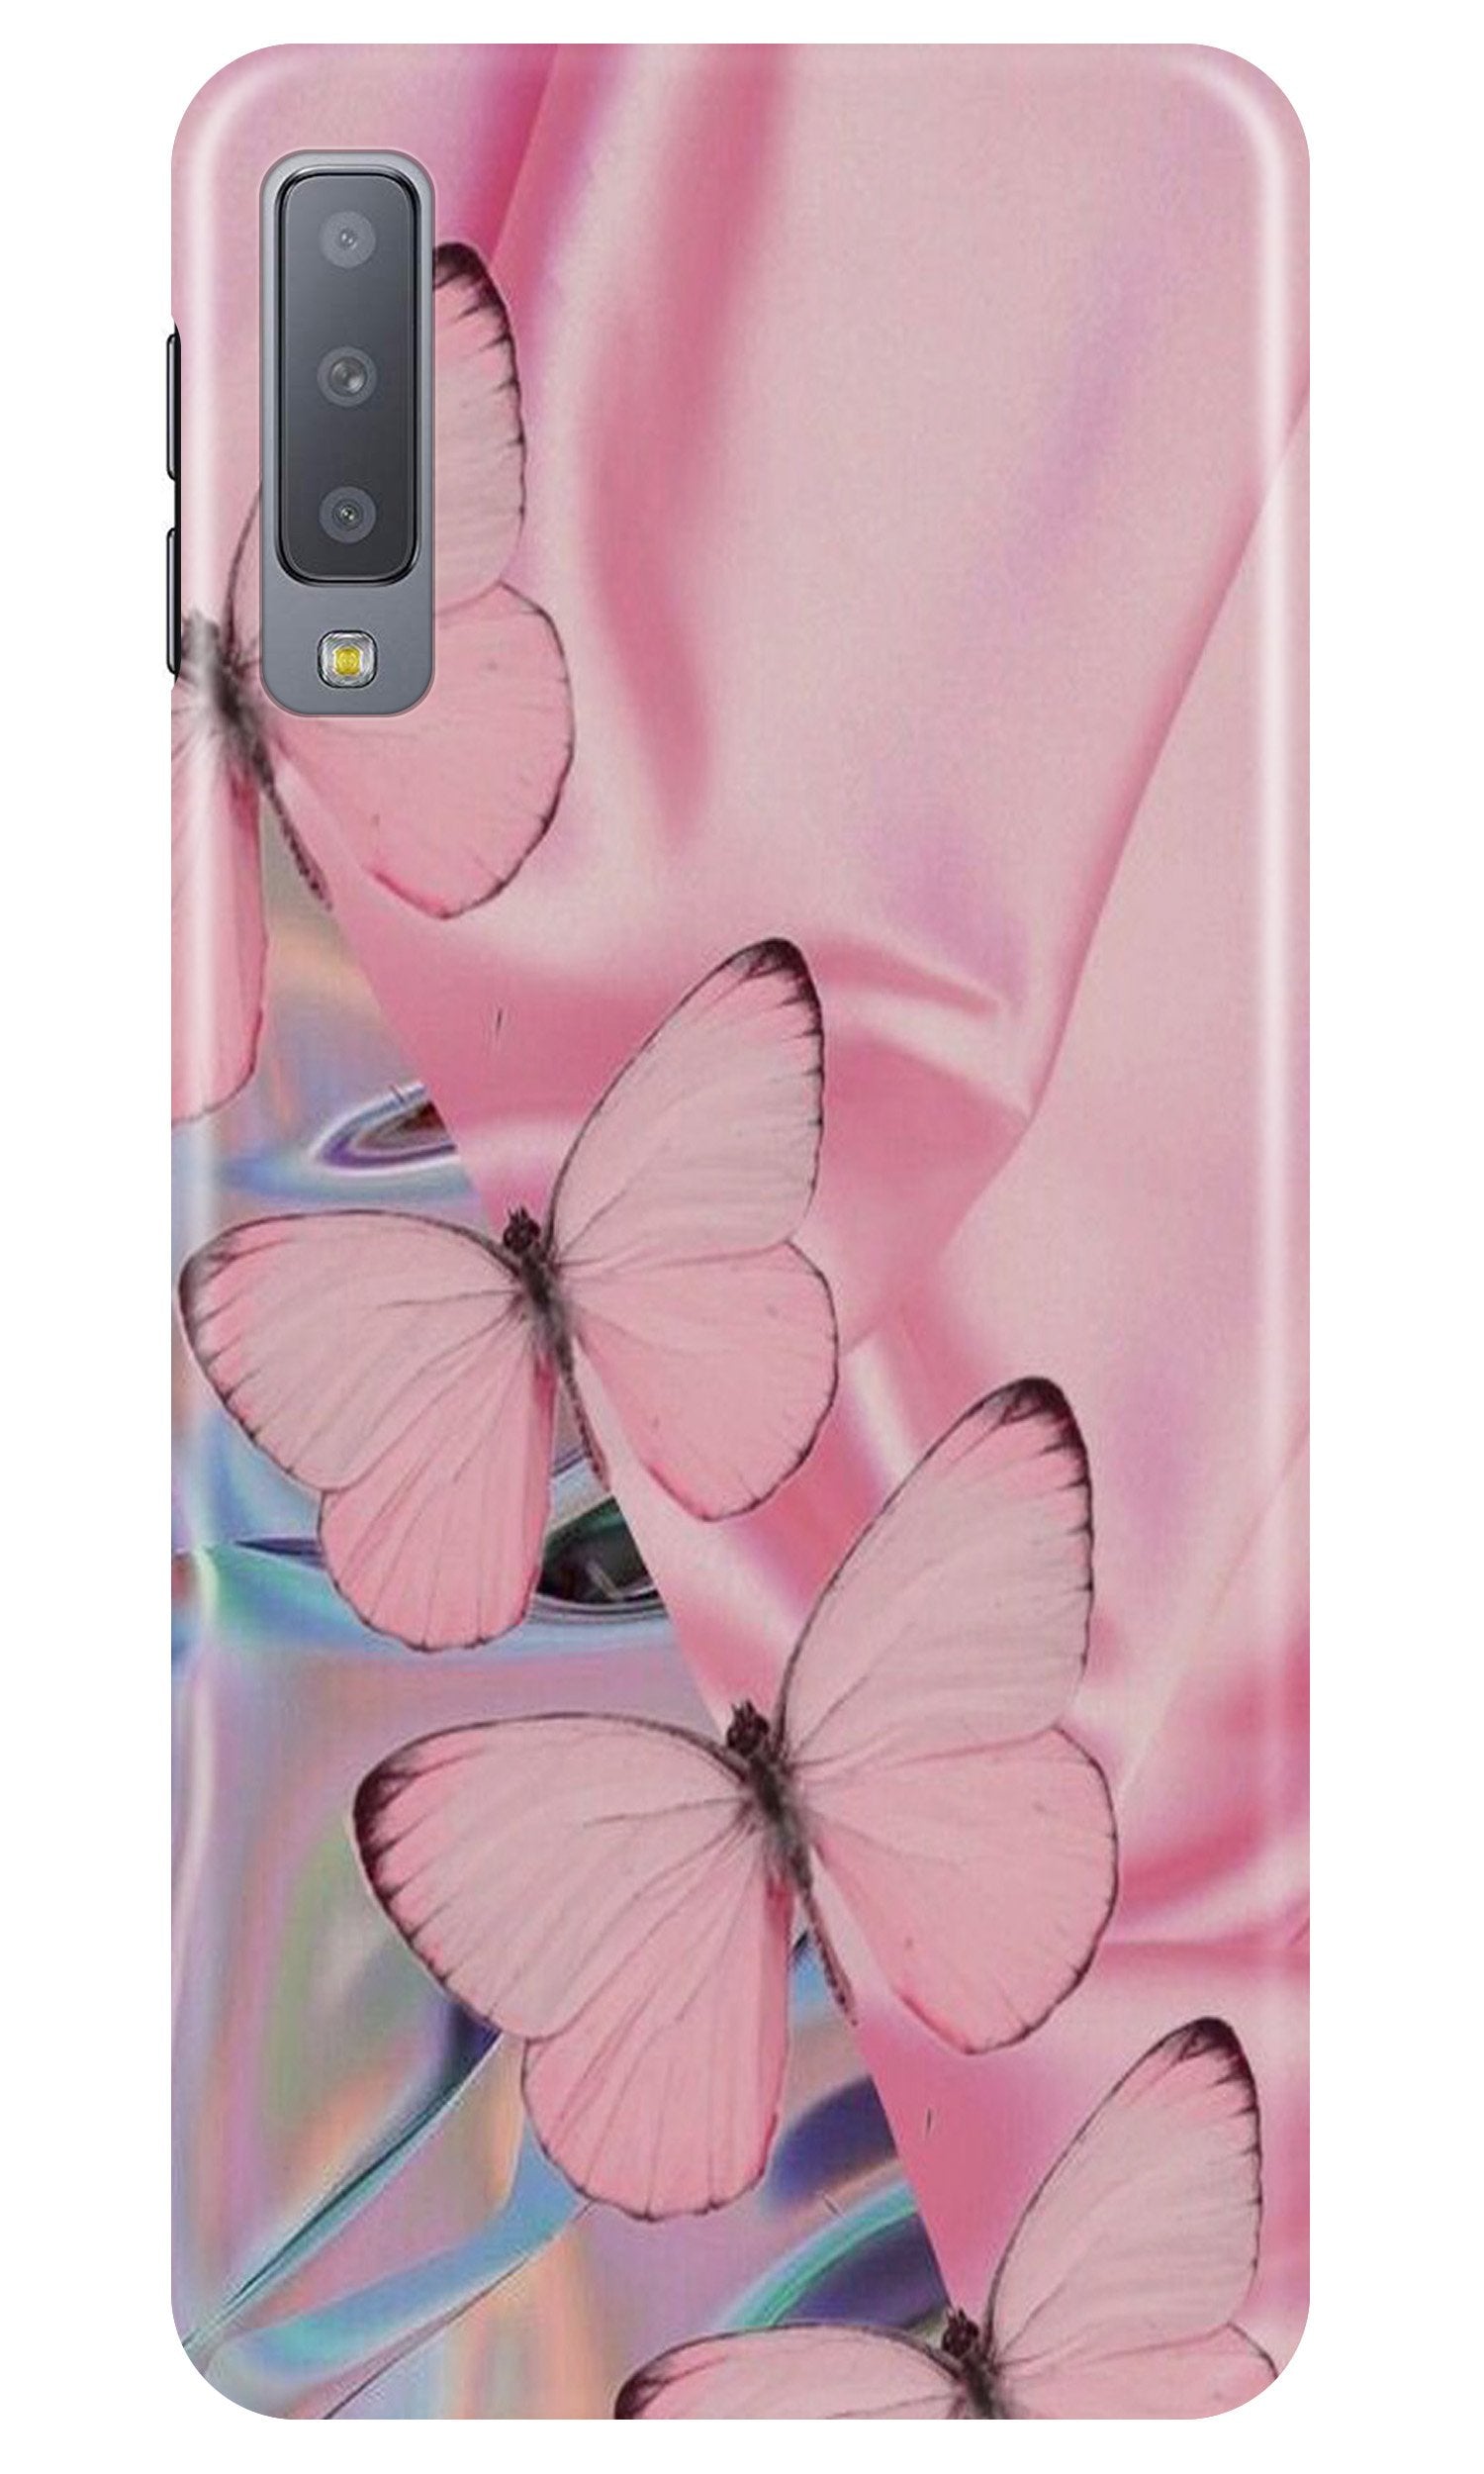 Butterflies Case for Samsung Galaxy A30s